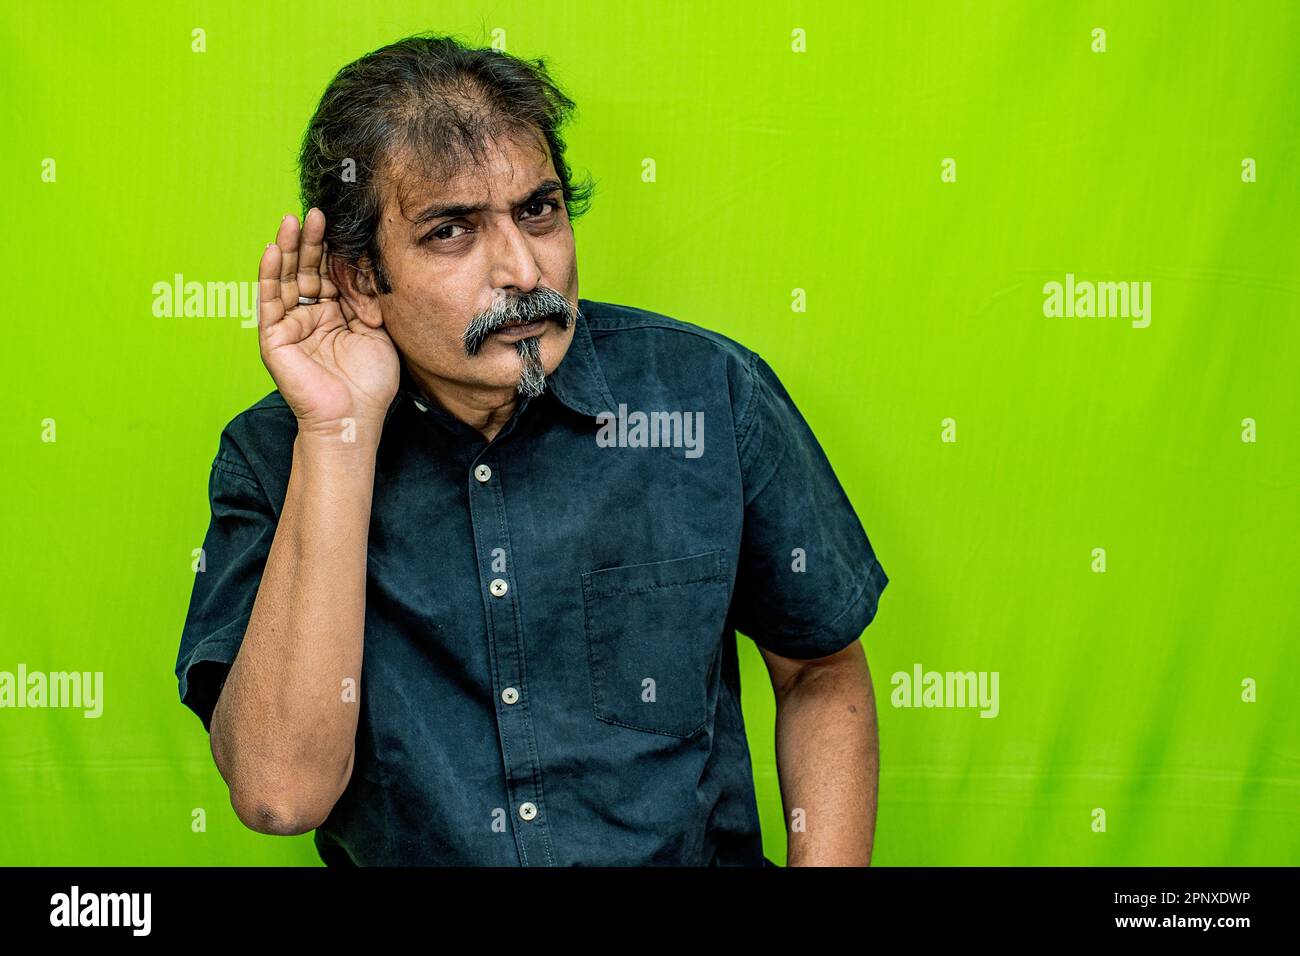 Ein Geschäftsmann in einem schwarzen Hemd steht vor einem grünen Hintergrund und schüttelt sich bewusst sein rechtes Ohr, als ob er versuchen würde, ein leises oder geheimes Geräusch zu hören Stockfoto